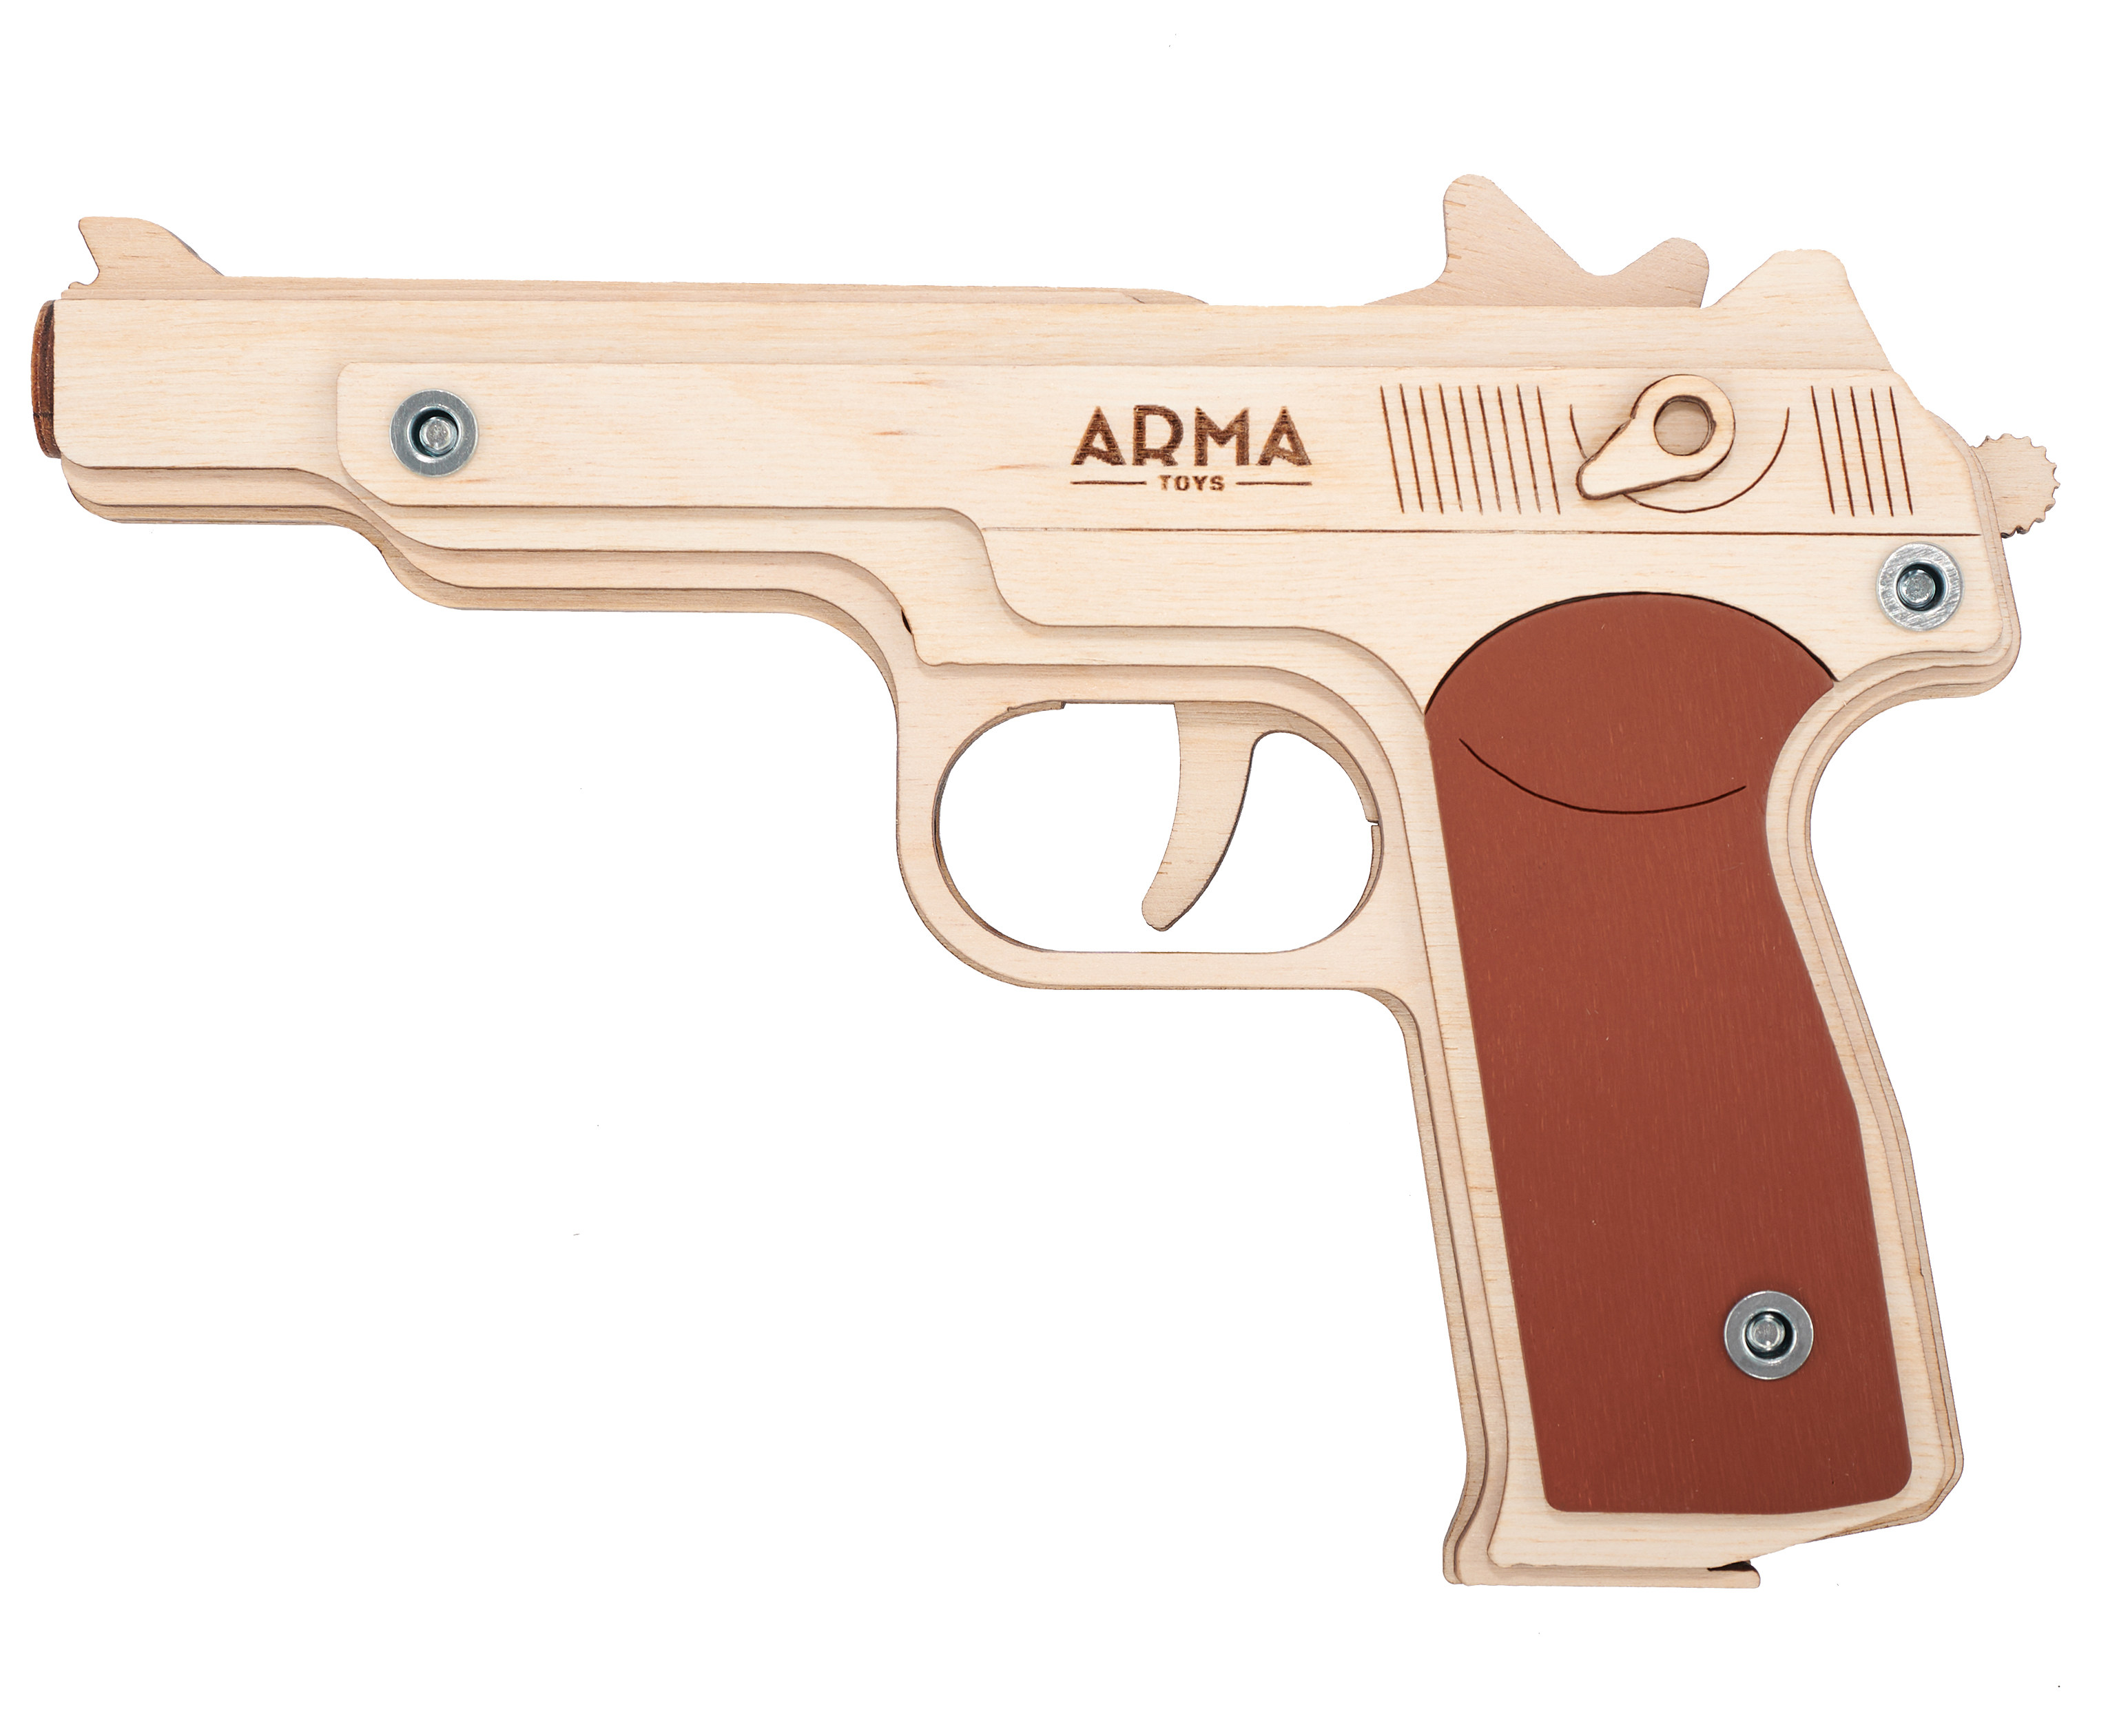 Резинкострел игрушечный Arma toys пистолет АПС макет, Стечкин, АТ009 резинкострел игрушечный arma toys пистолет глок макет glock at013